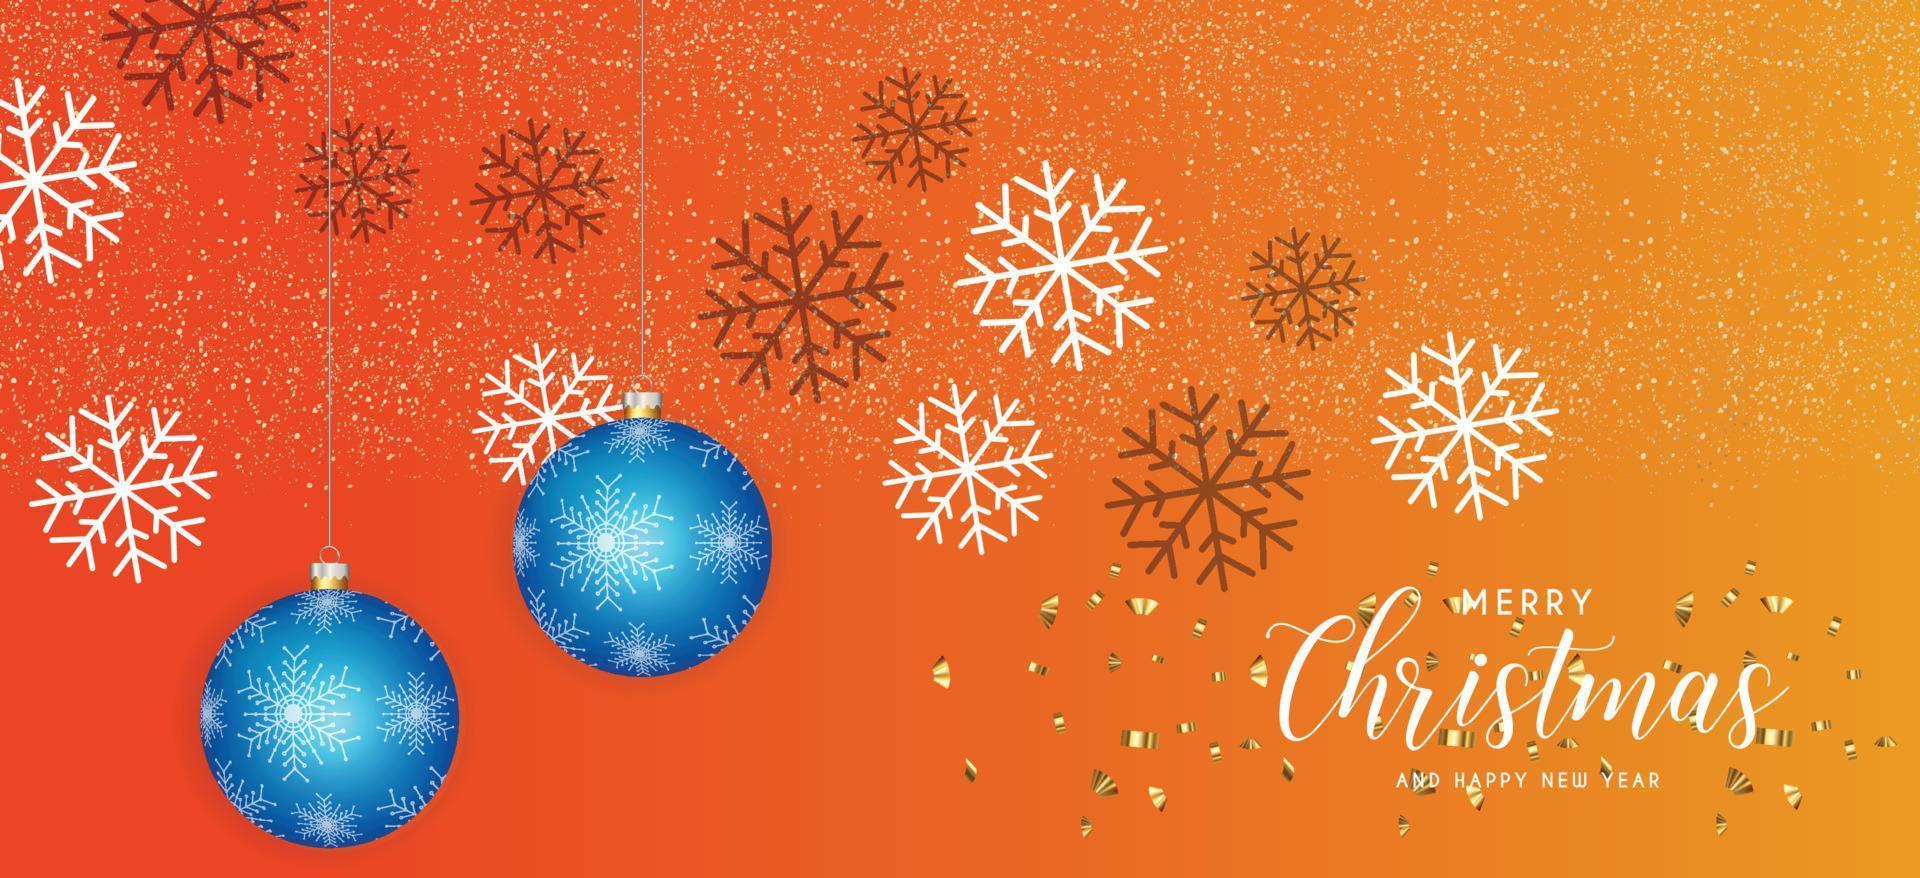 fond orange de noël festif avec des décorations de noël dorées boule bleue et des paillettes dorées. illustration vectorielle. vecteur